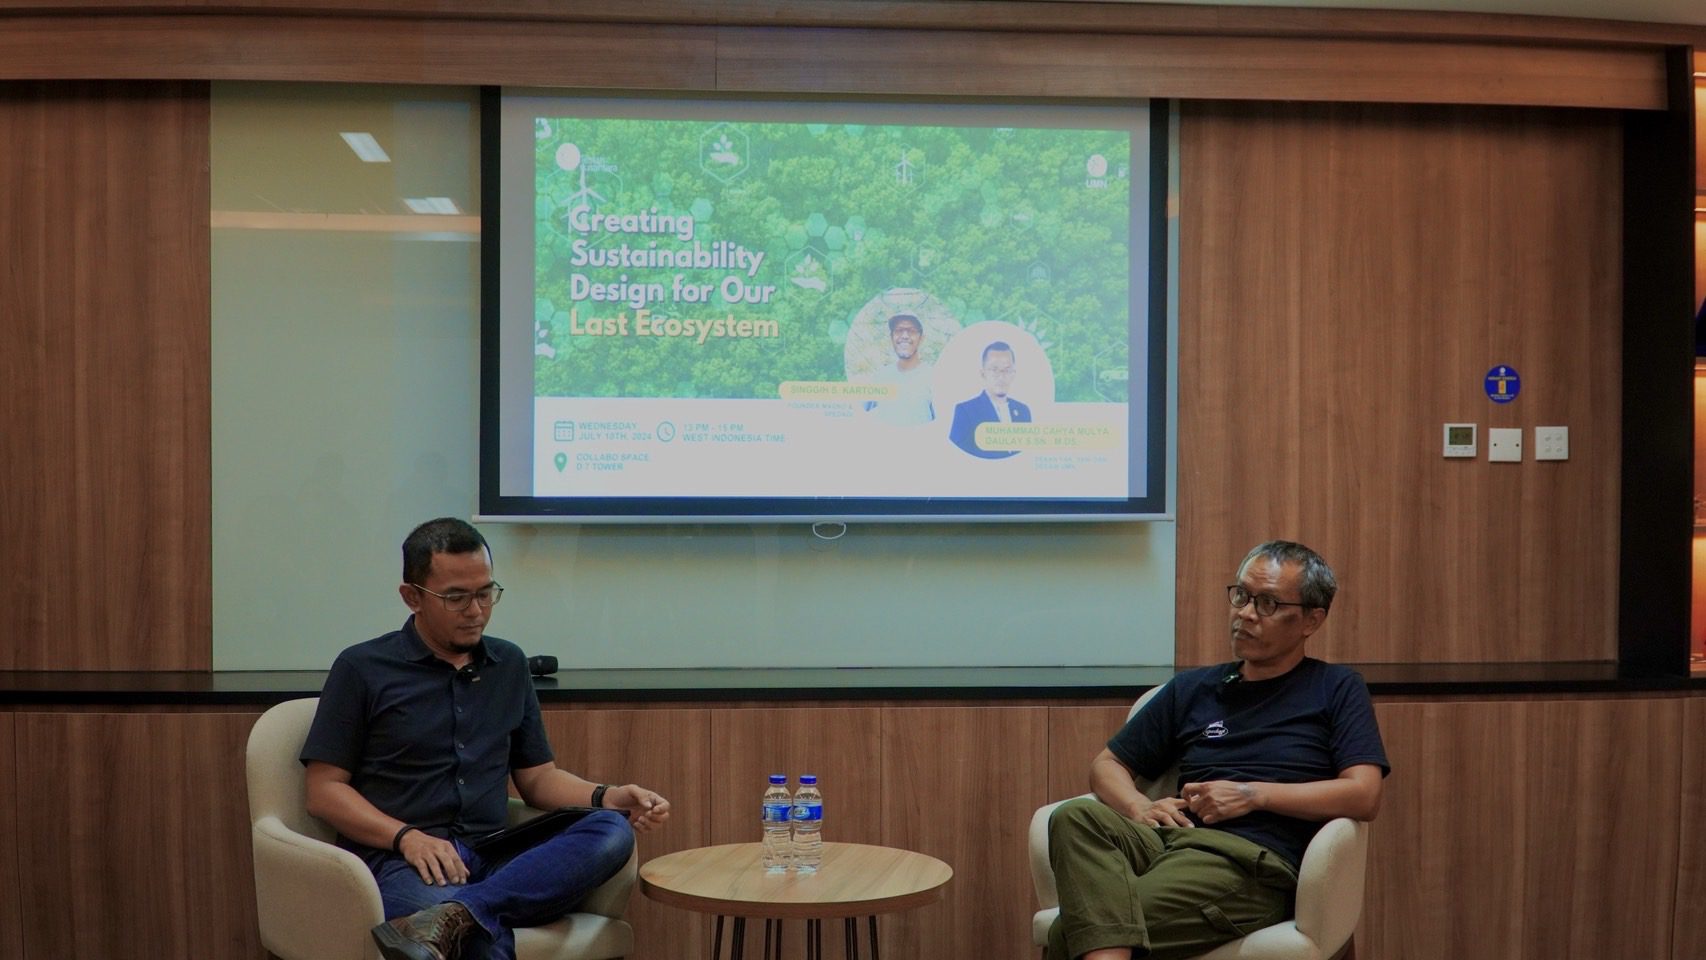 Lestari Nusantara : Creating Sustainability Design for Our Last EcoSystem